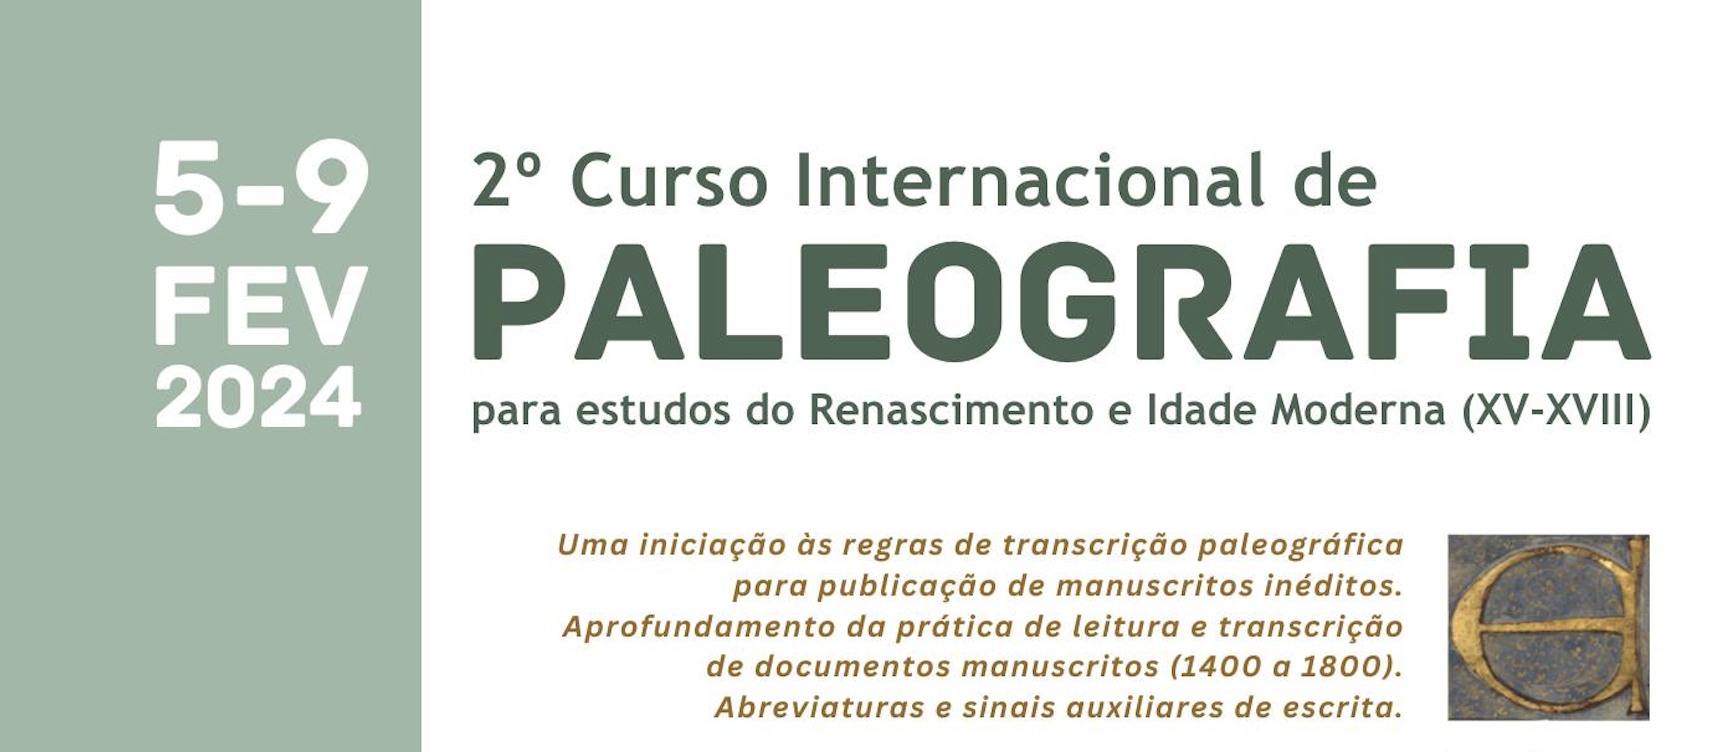 2º Curso Internacional de Paleografia para Estudos do Renascimento e Idade Moderna (séc. XV-XVIII)